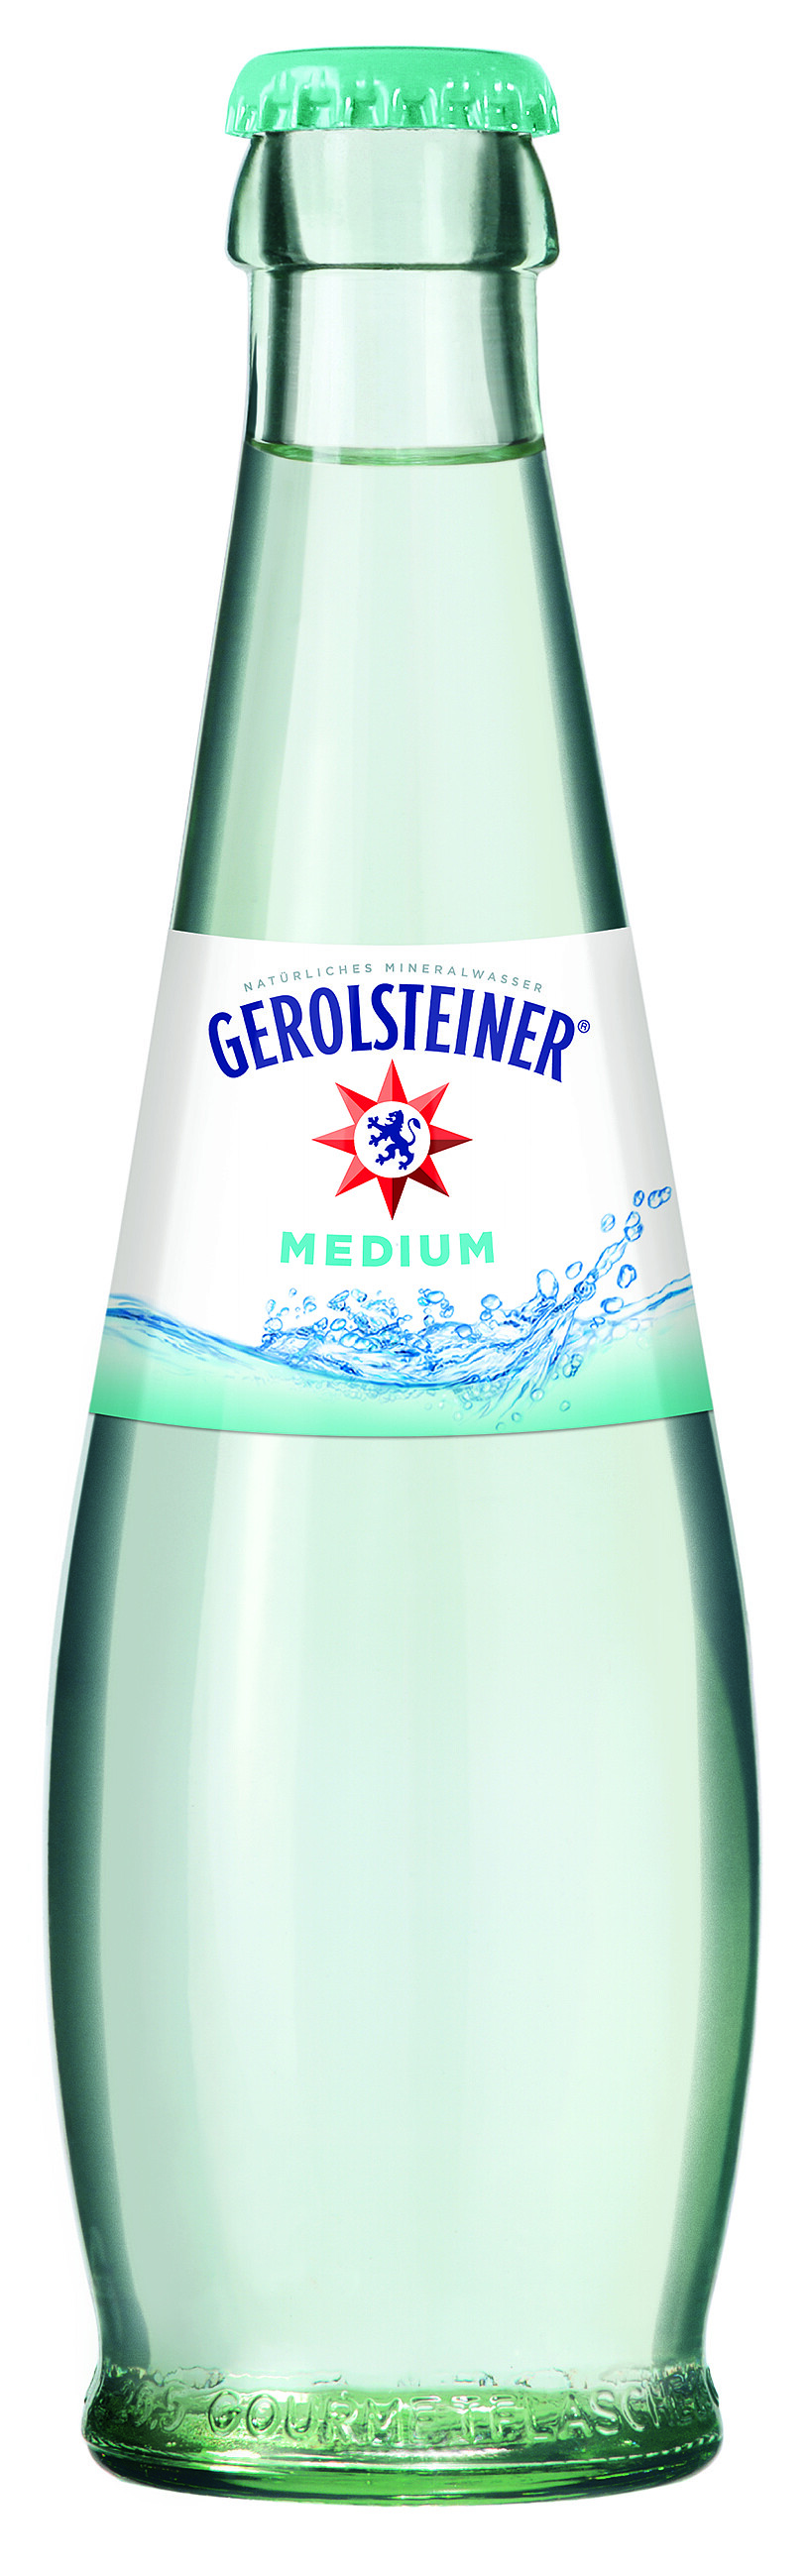 Gerolsteiner Gourmet medium Glas 0,25 Liter 